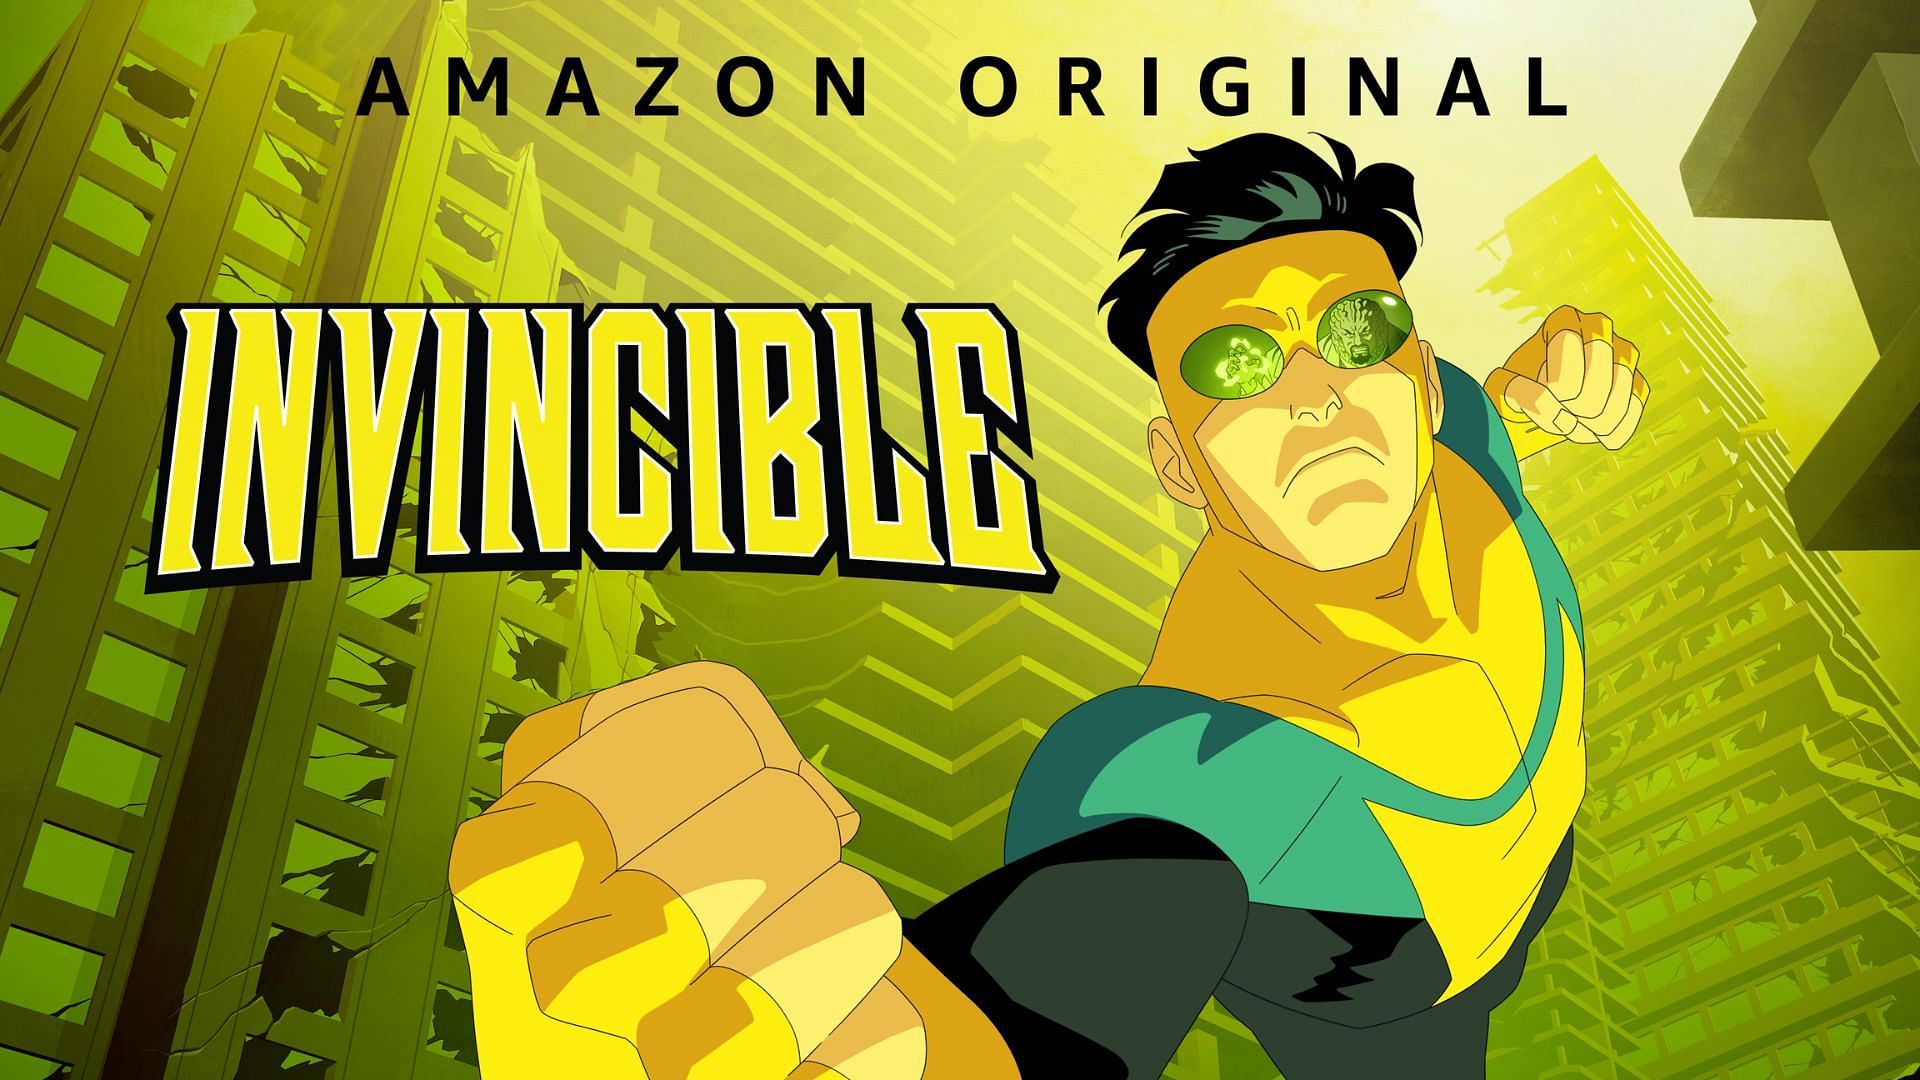 Invincible (Image via Prime Video)